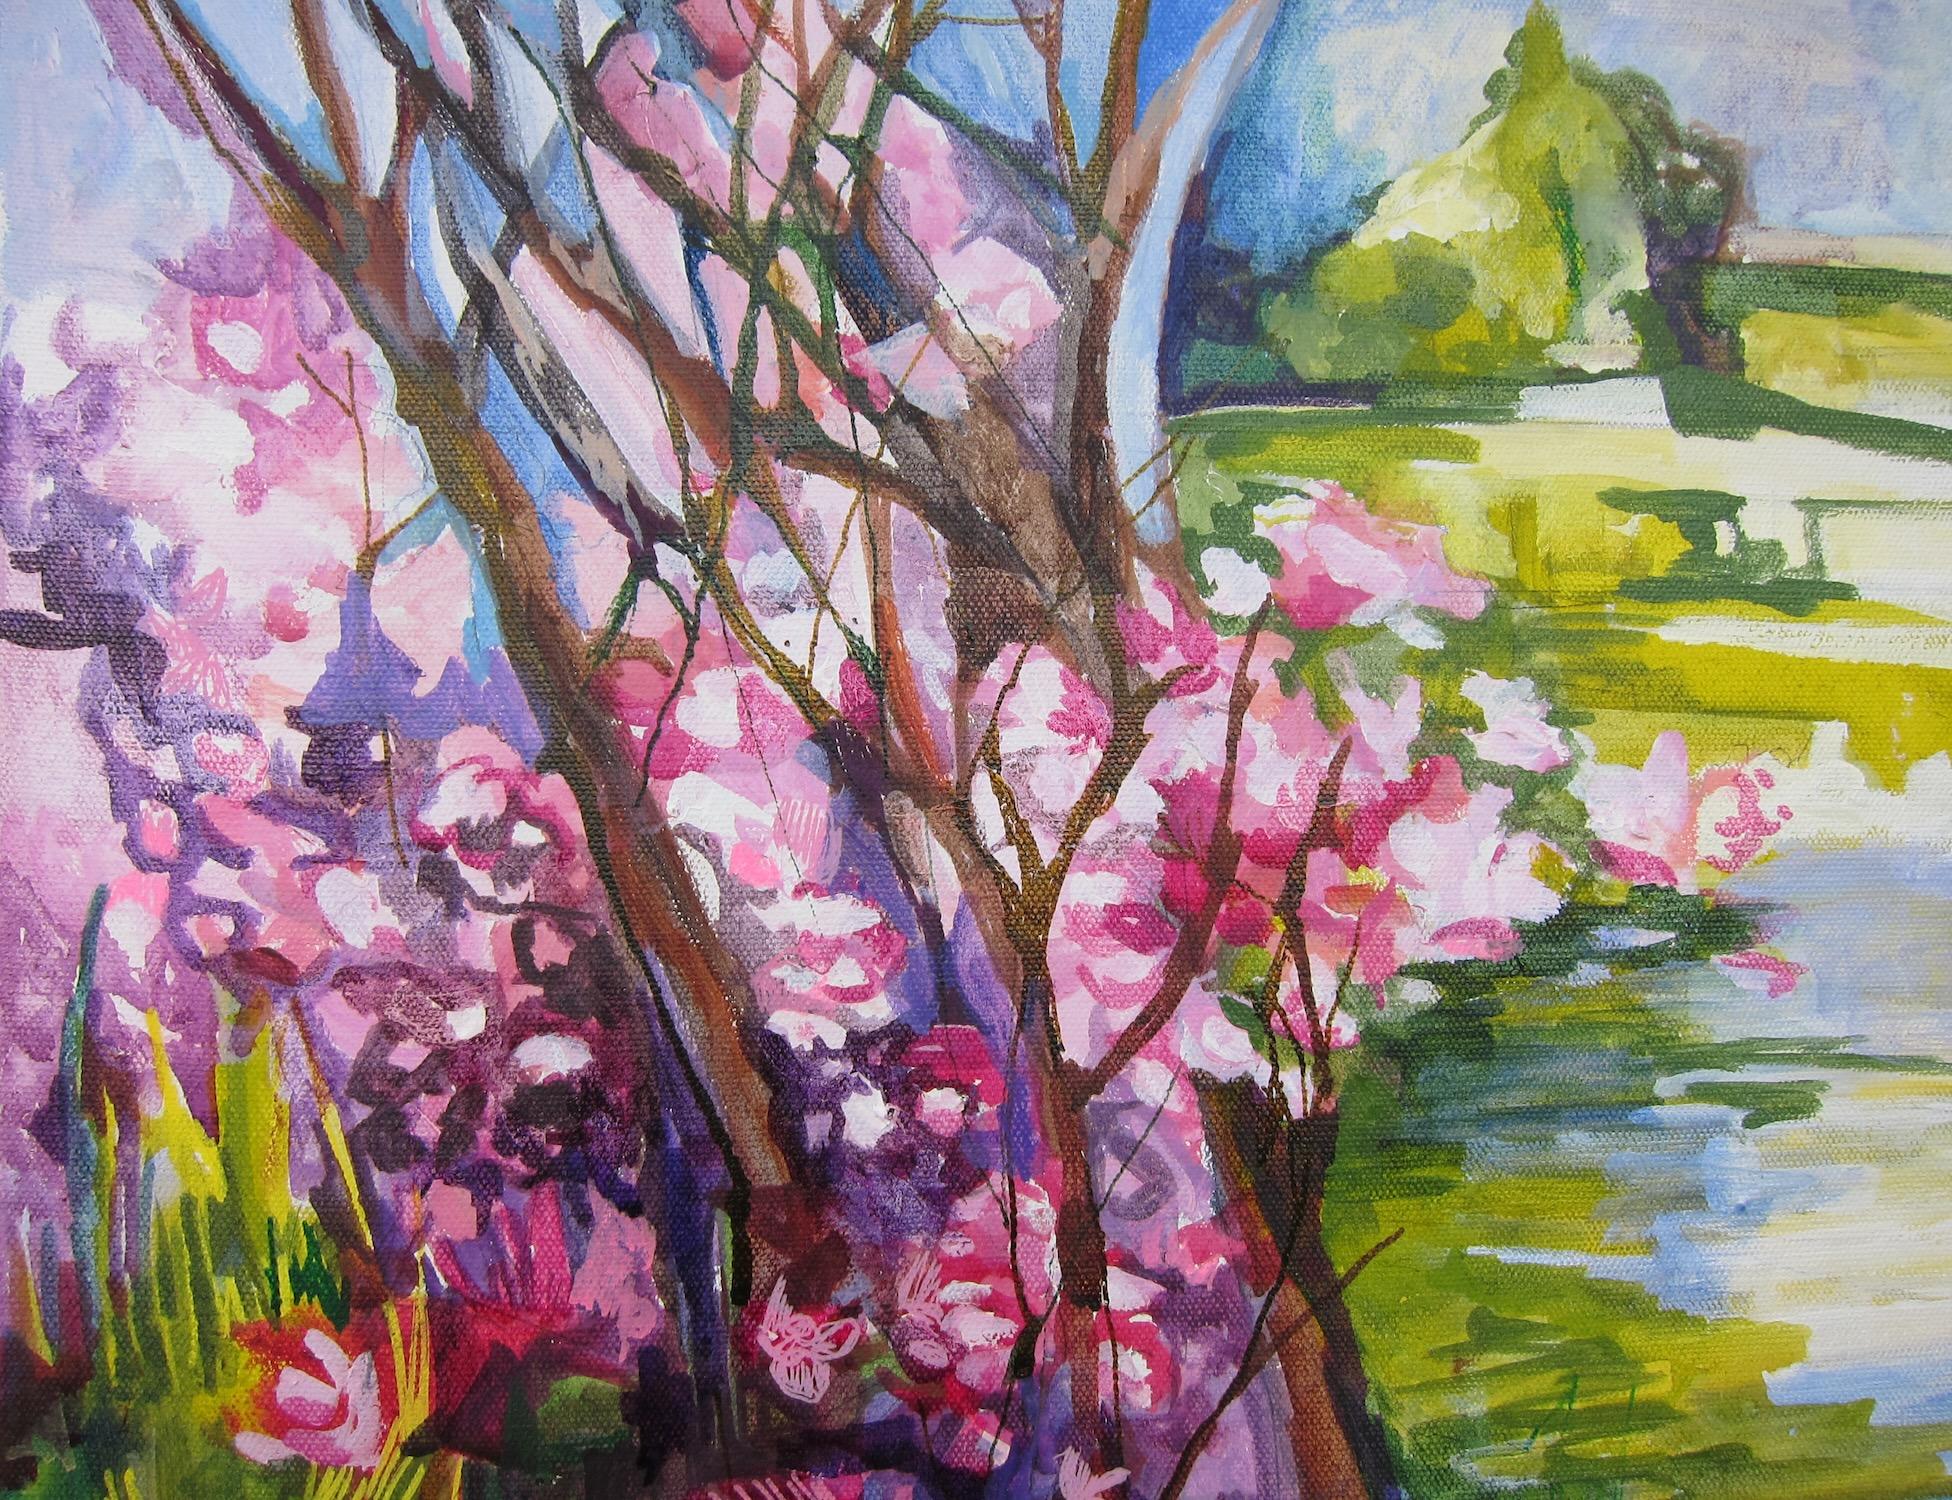 <p>Commentaires de l'artiste<br>Inspirée par la beauté, l'artiste Colette Wirz Nauke partage une vue magnifique des cerisiers en fleurs. Des couleurs vives et des coups de pinceau audacieux remplissent la toile. Colette cherche à transmettre une